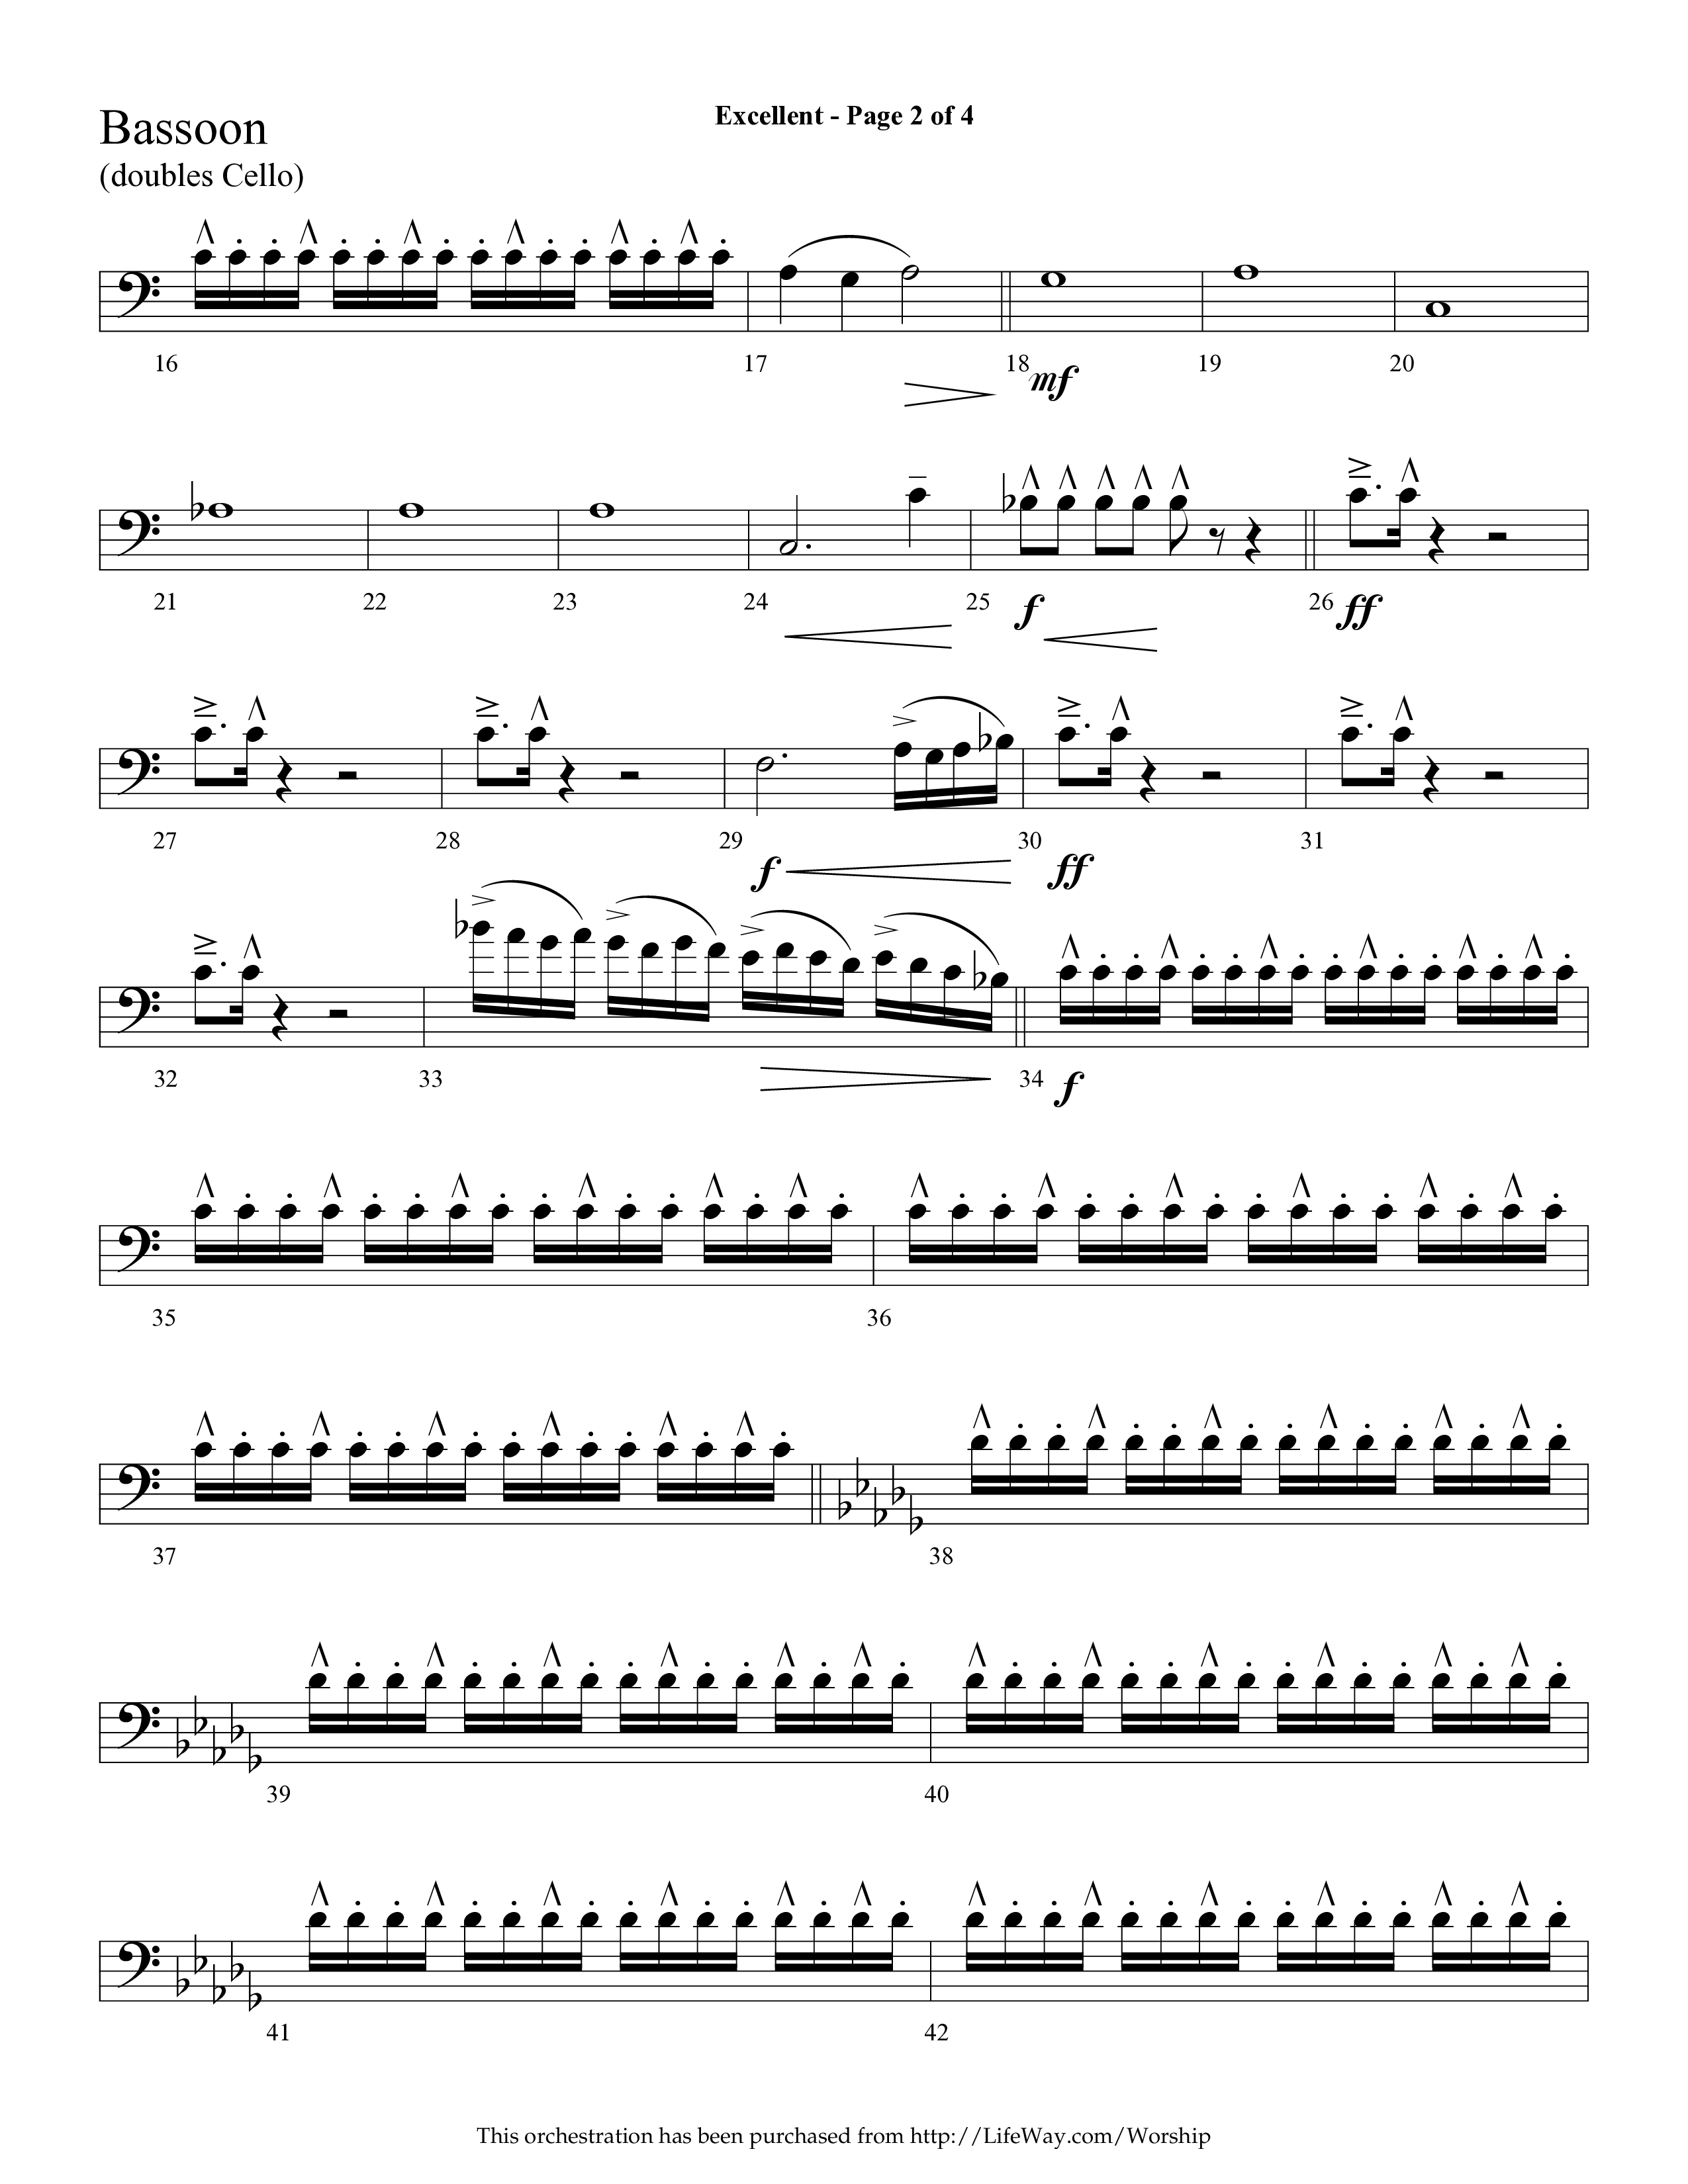 Excellent (Choral Anthem SATB) Bassoon (Lifeway Choral / Arr. Cliff Duren)